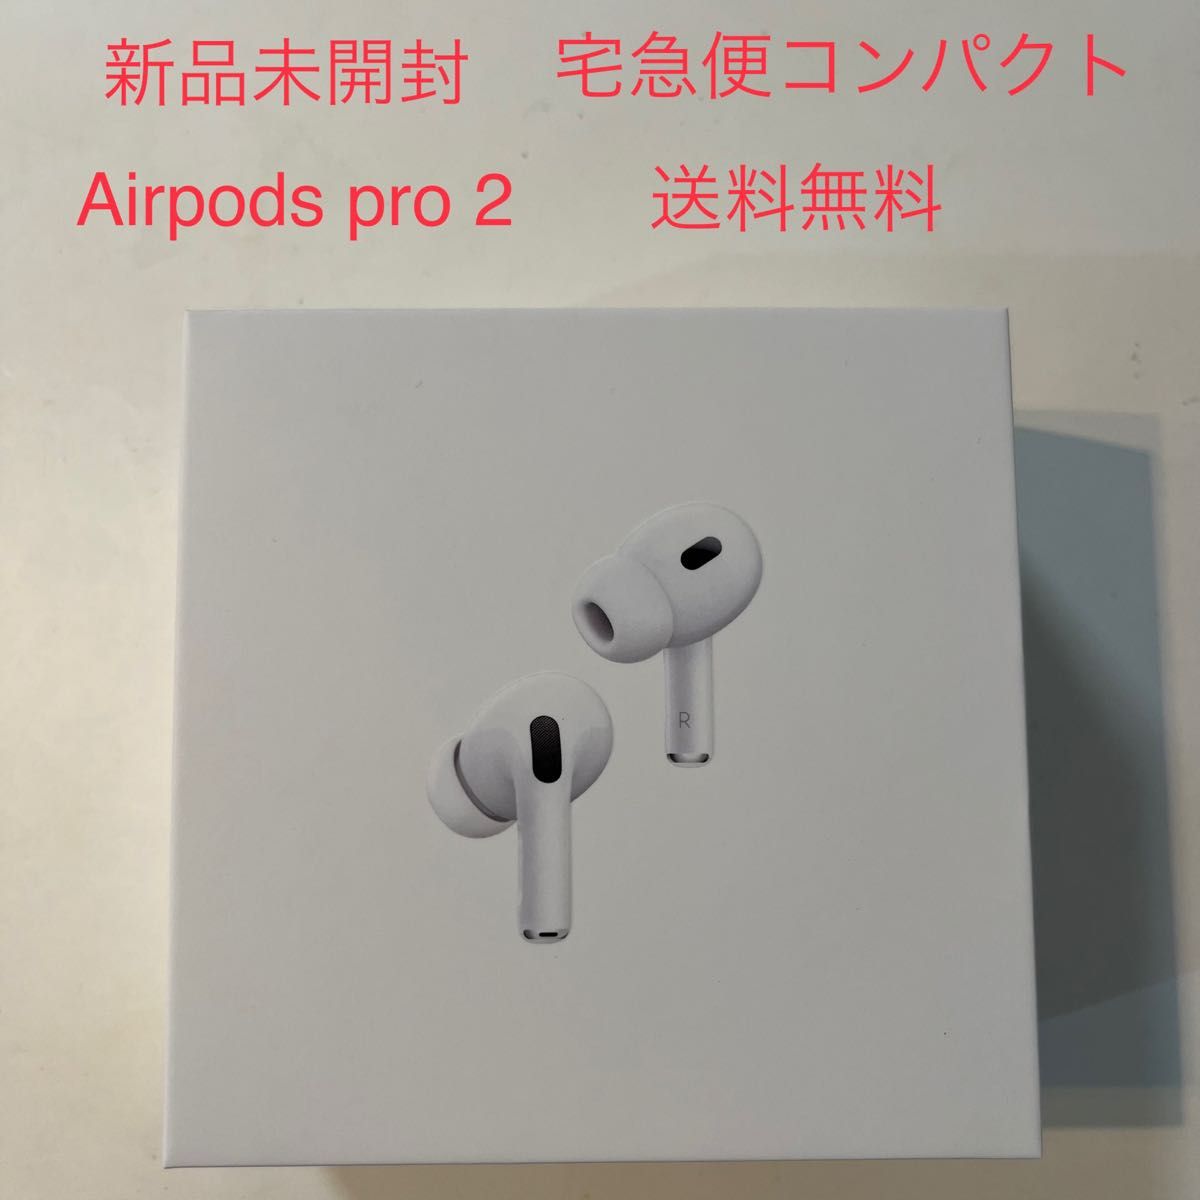 新品 未開封 Airpods pro 2 エアーポッズプロ 第2世代コストコ購入 Apple Wireless